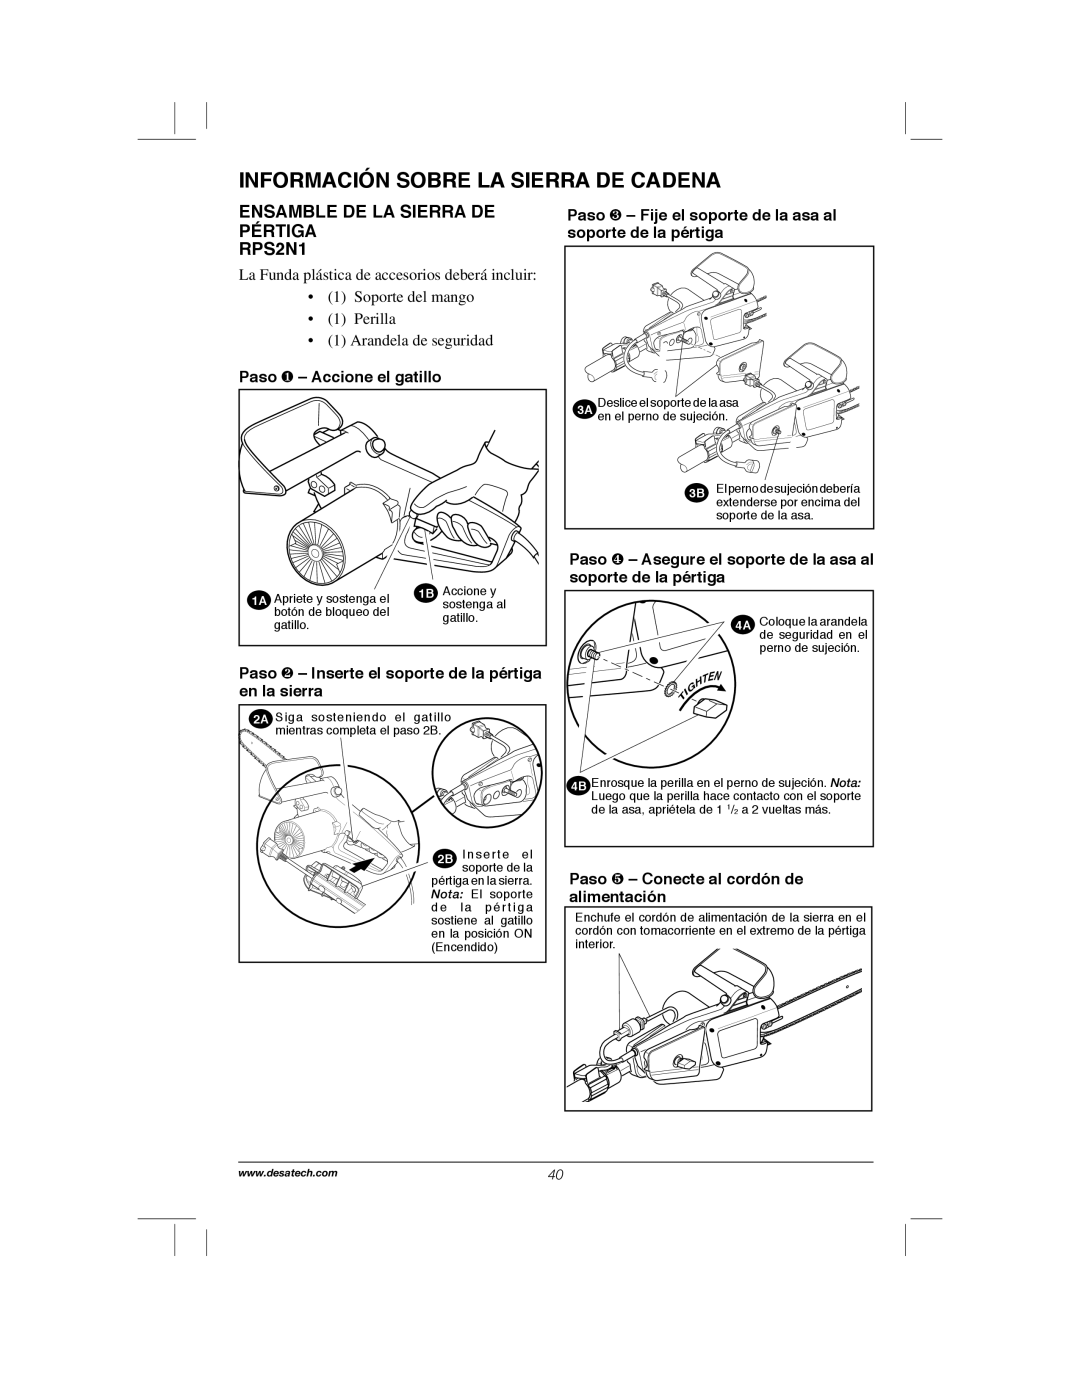 Remington Power Tools RPS2N1, 104317, PS1510A manual Información Sobre La Sierra De Cadena, Paso ❶ - Accione el gatillo 